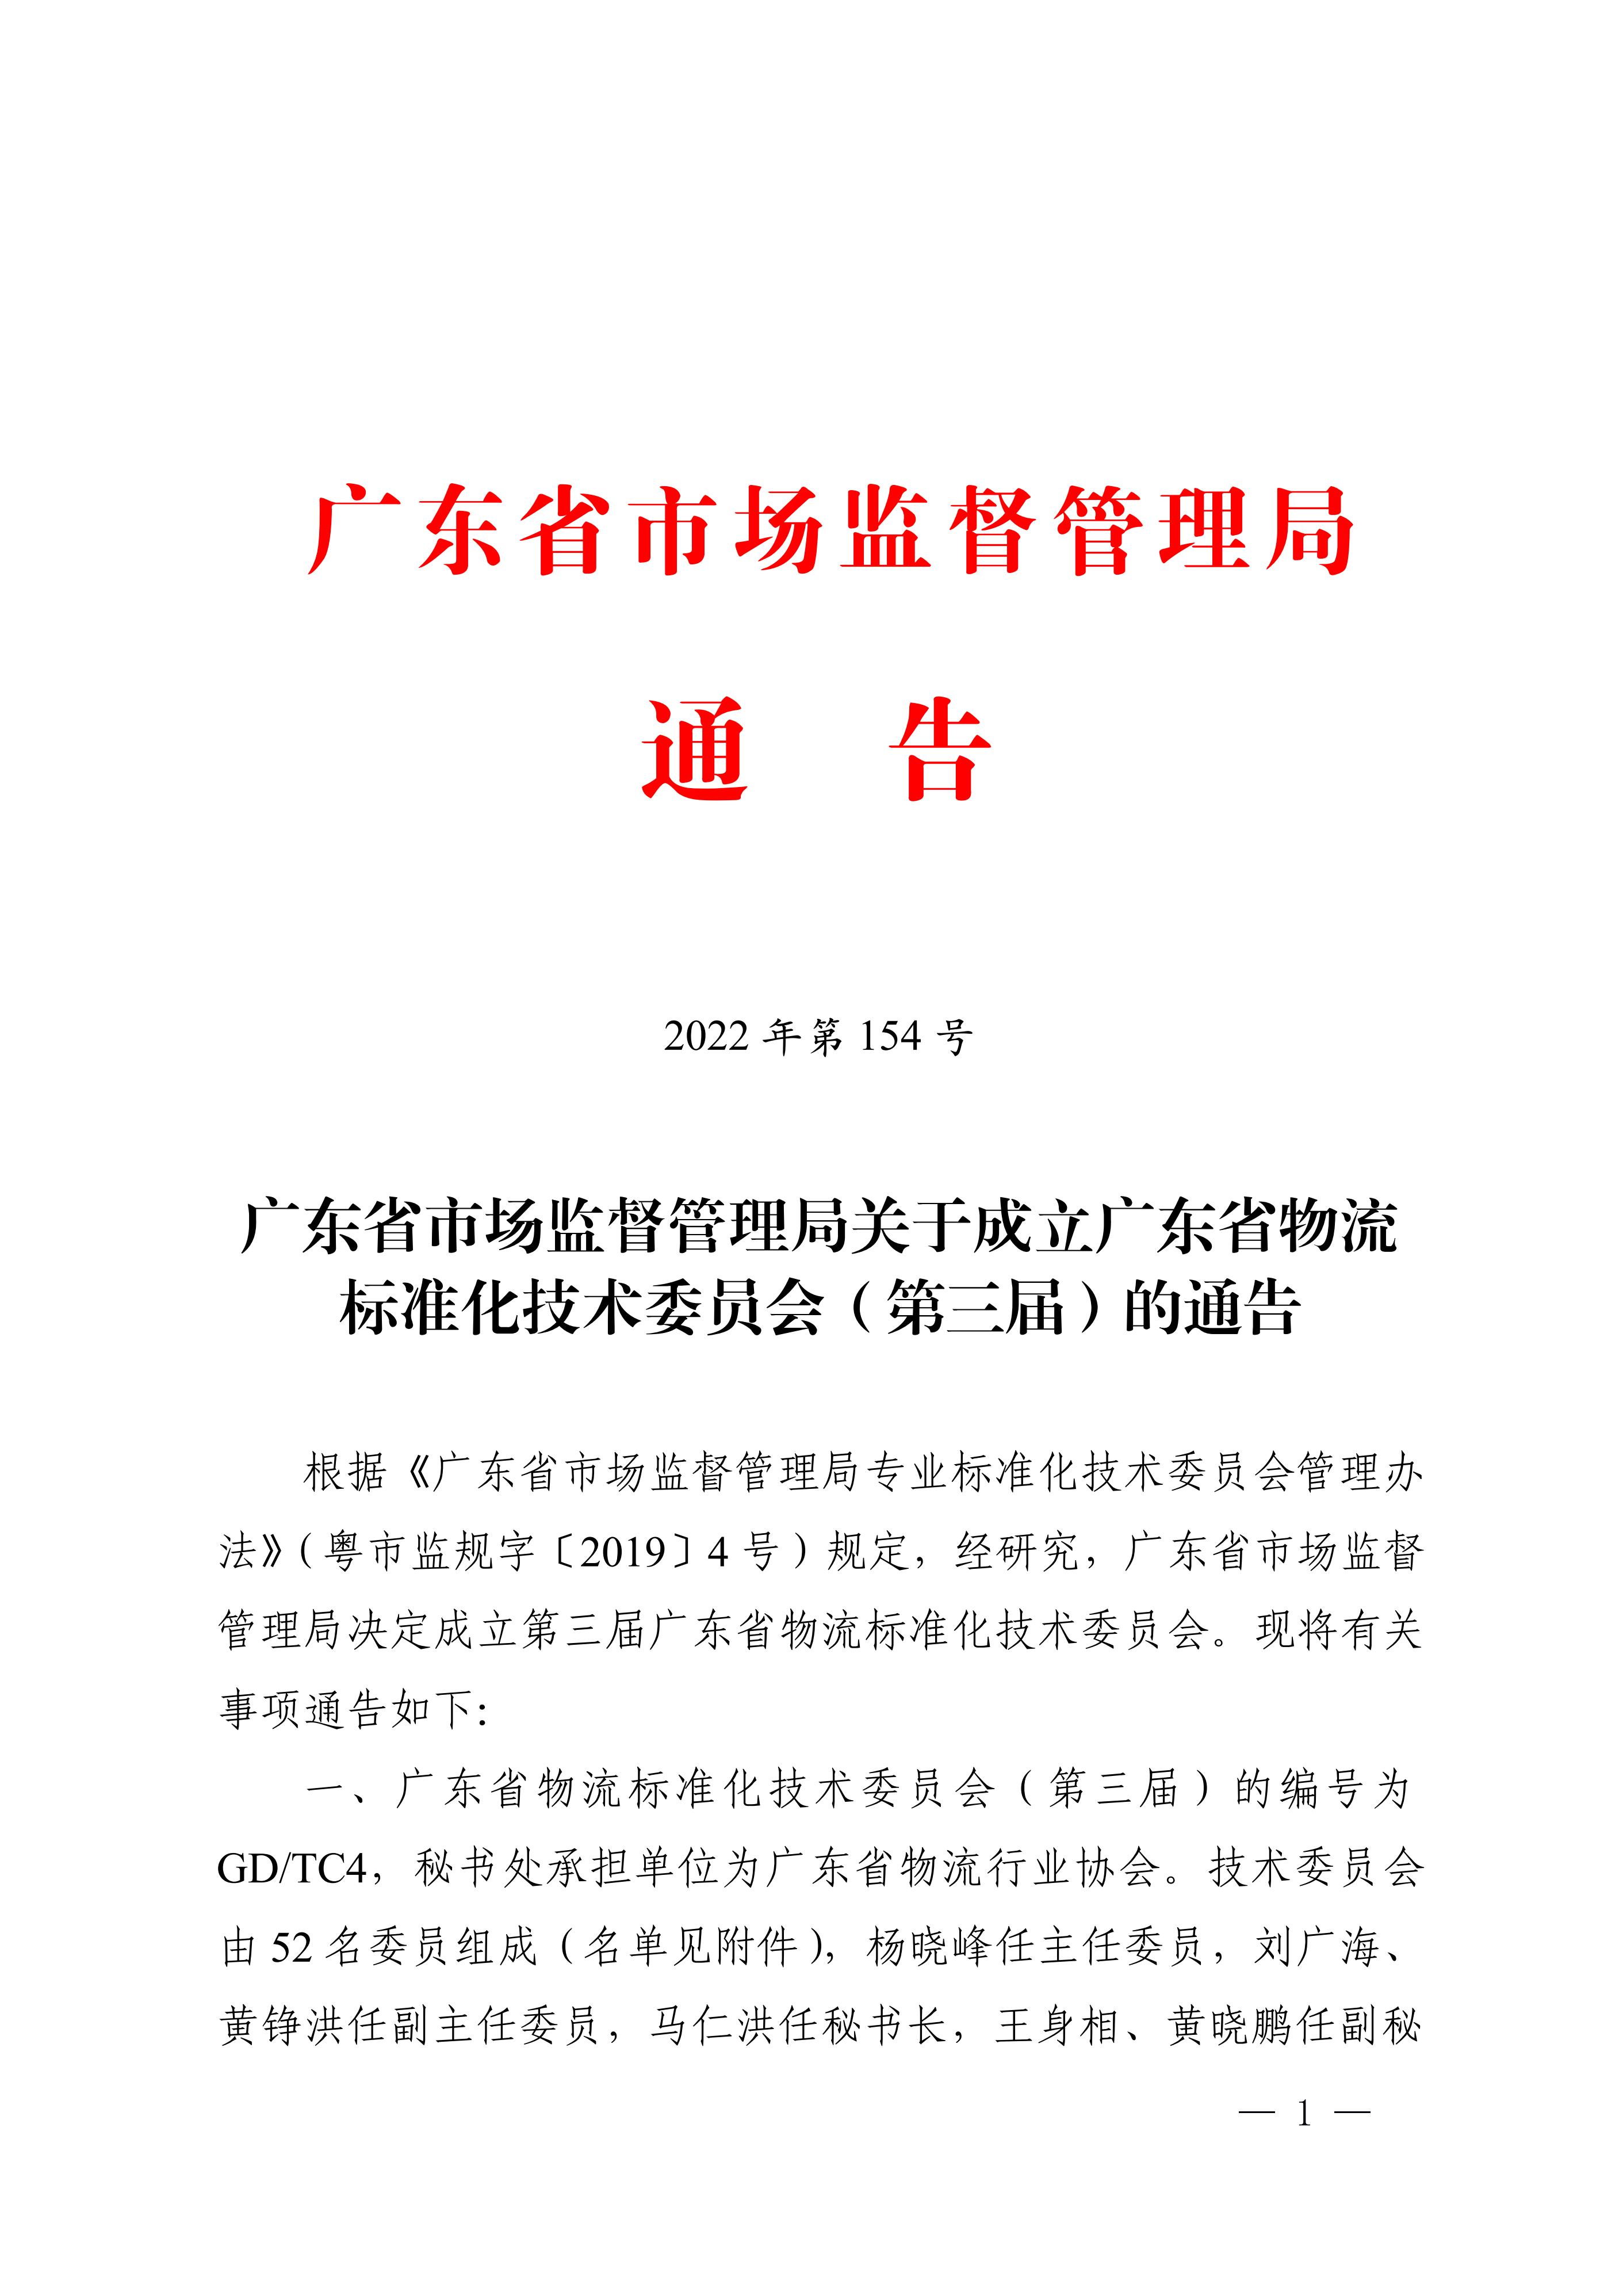 正-广东省市场监督管理局关于成立广东省物流标准化技术委员会（第三届）的通告_00.jpg